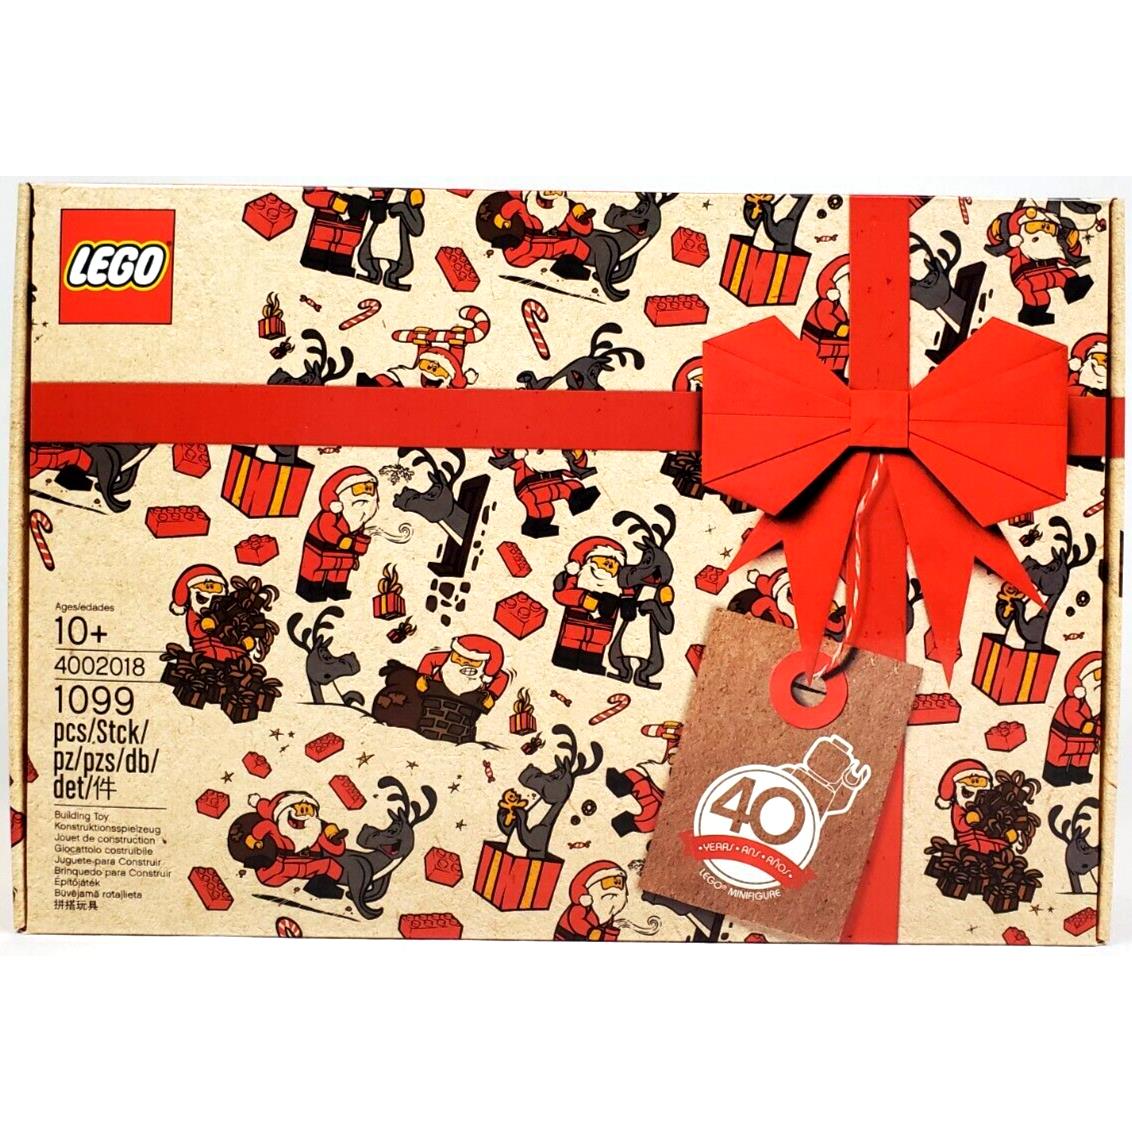 Lego Employee Christmas Gift Set 4002018